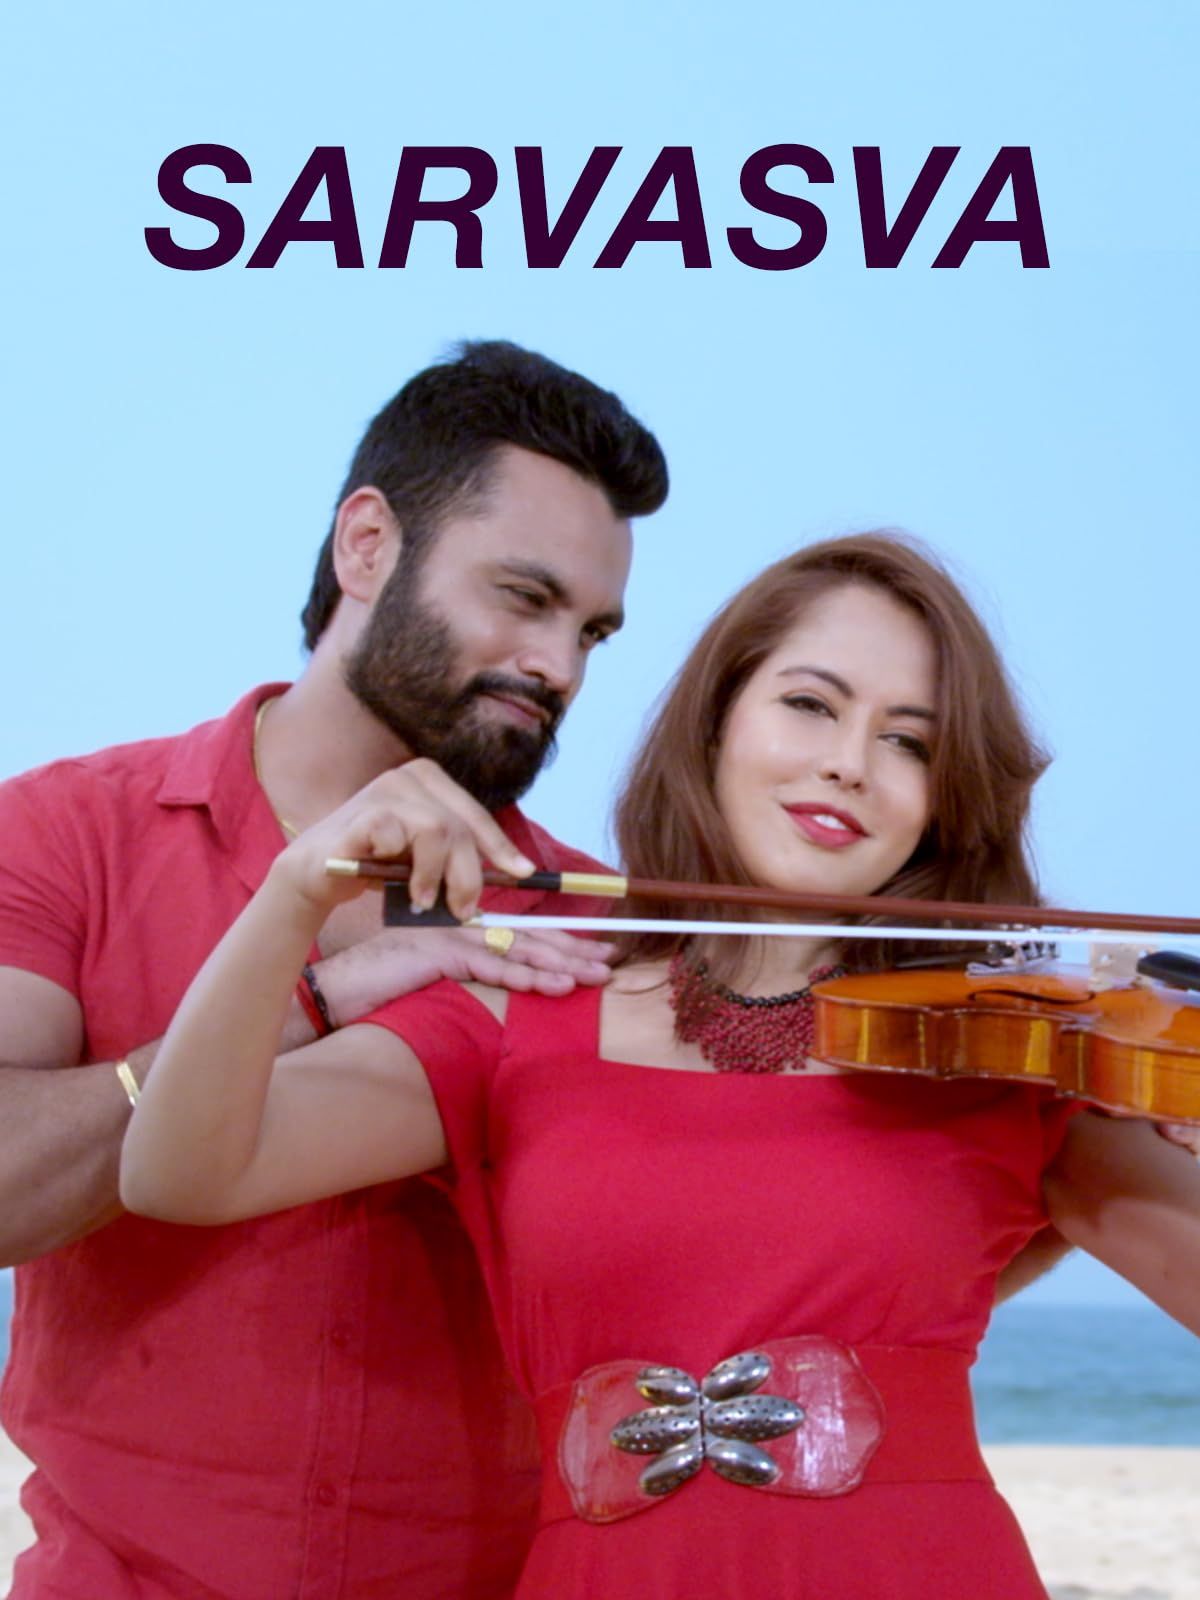 Sarvasva (2023) Hindi Dubbed Movie download full movie